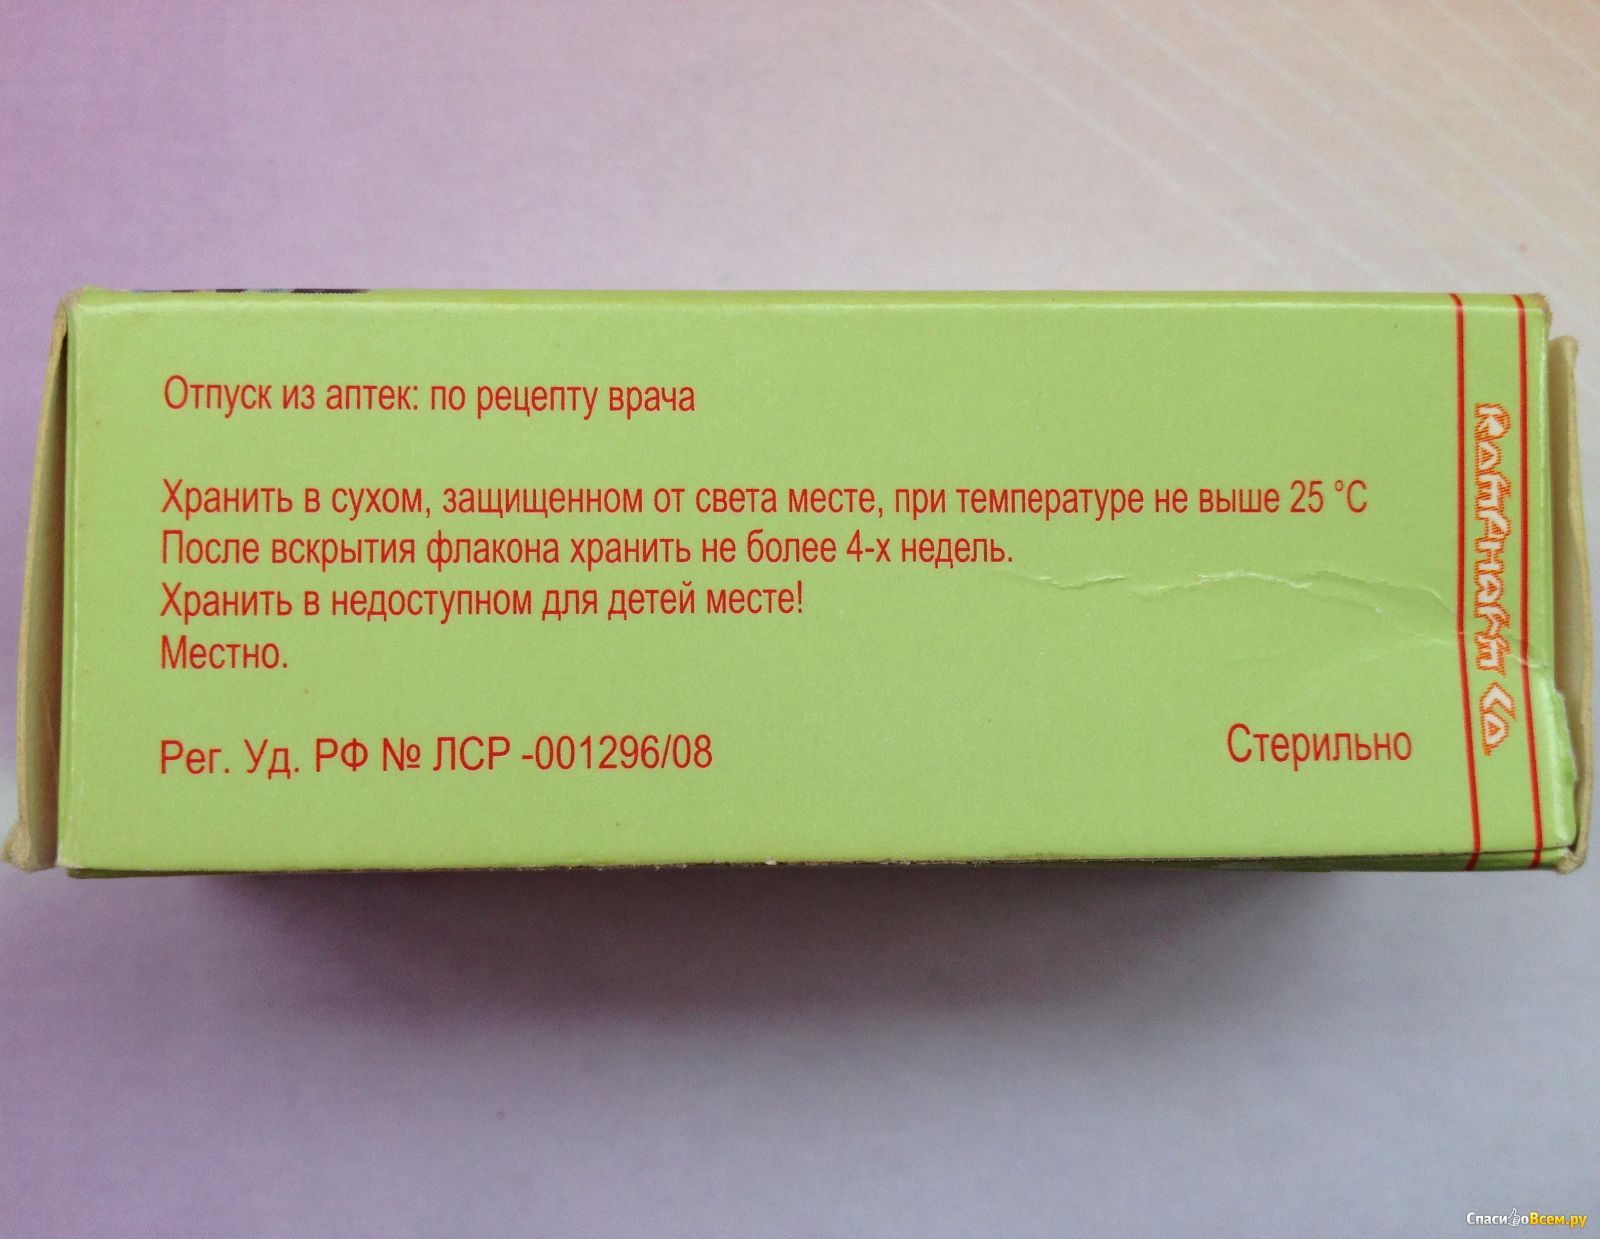 Ципрофлоксацин отзывы пациентов. Капли Ципрофлоксацин при ячмене. Ципрофлоксацин 0.3 капли глазные инструкция. Ципрофлоксацин капли отзывы. Ципрофлоксацин капли глазные рецепт.